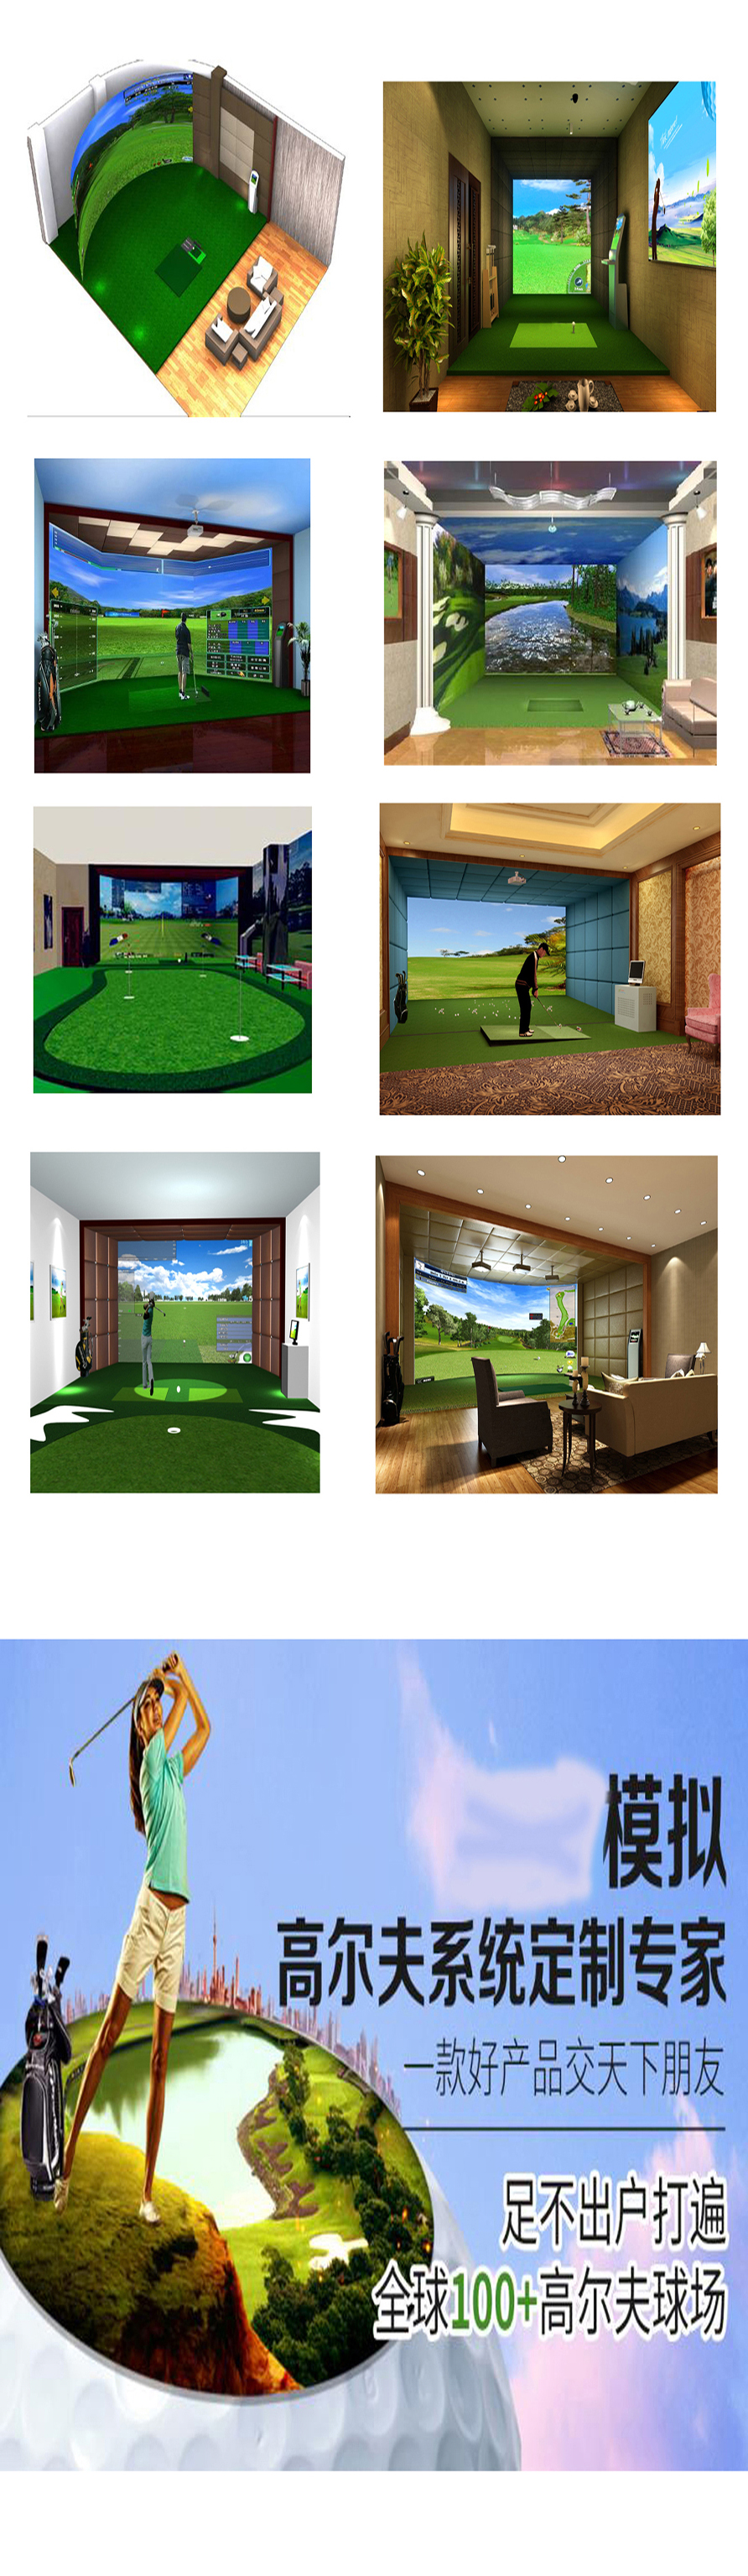 室内高尔夫实例 4.jpg